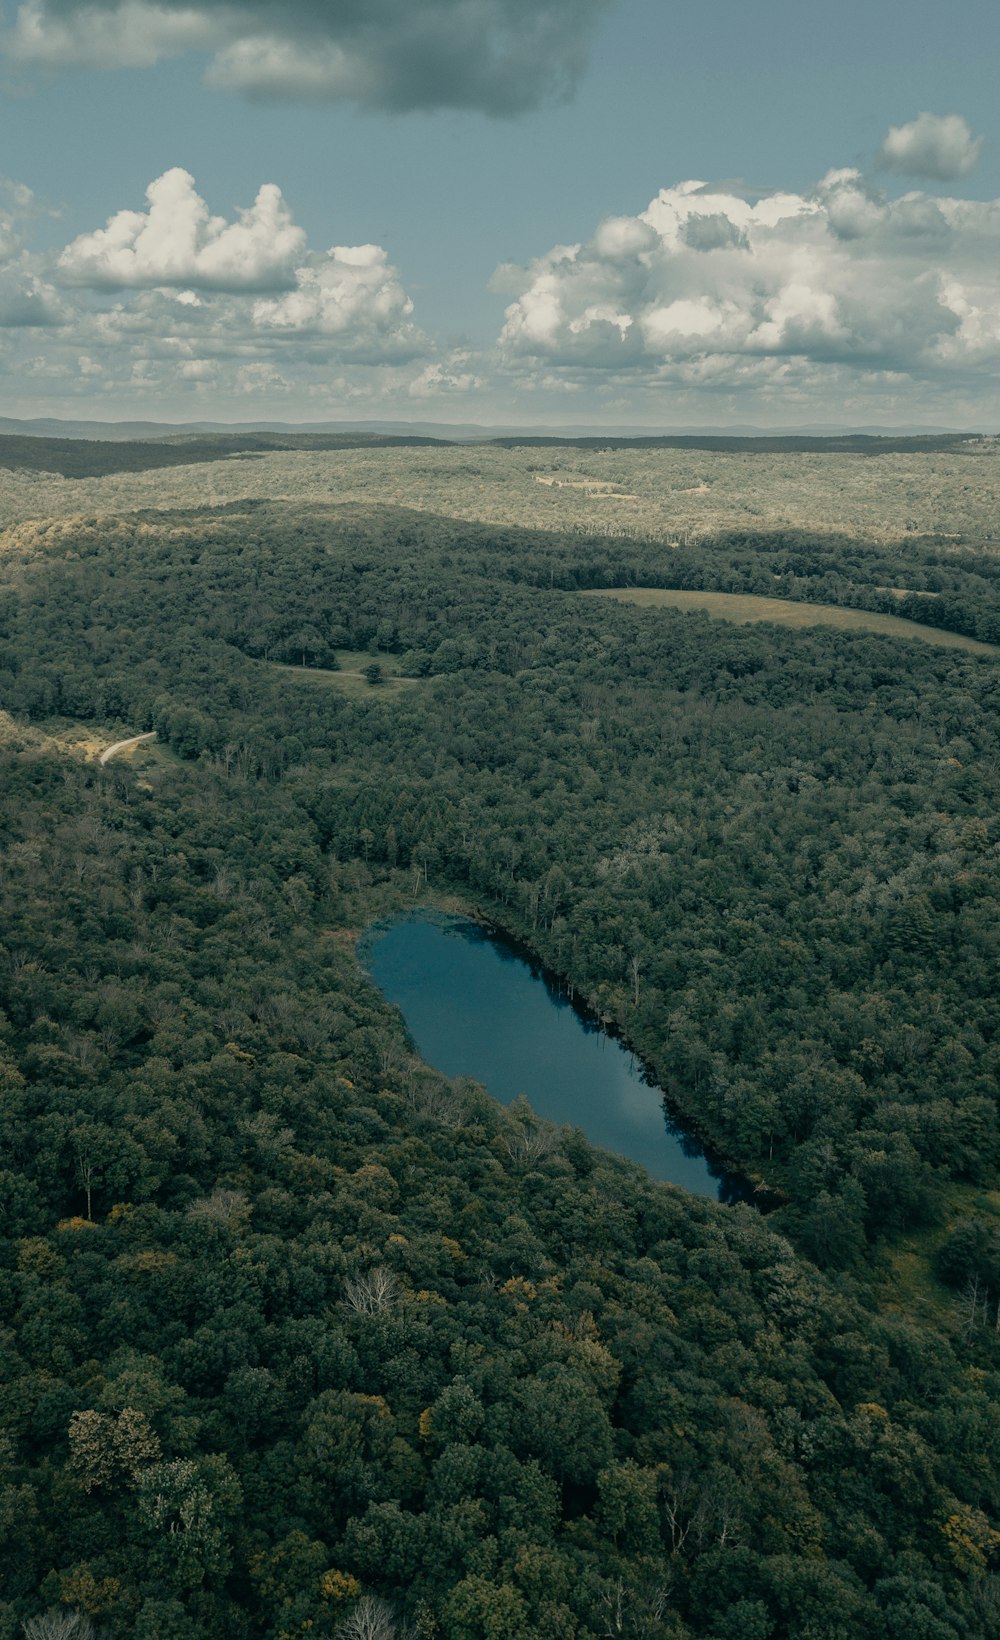 Veduta aerea del lago circondato da alberi verdi durante il giorno